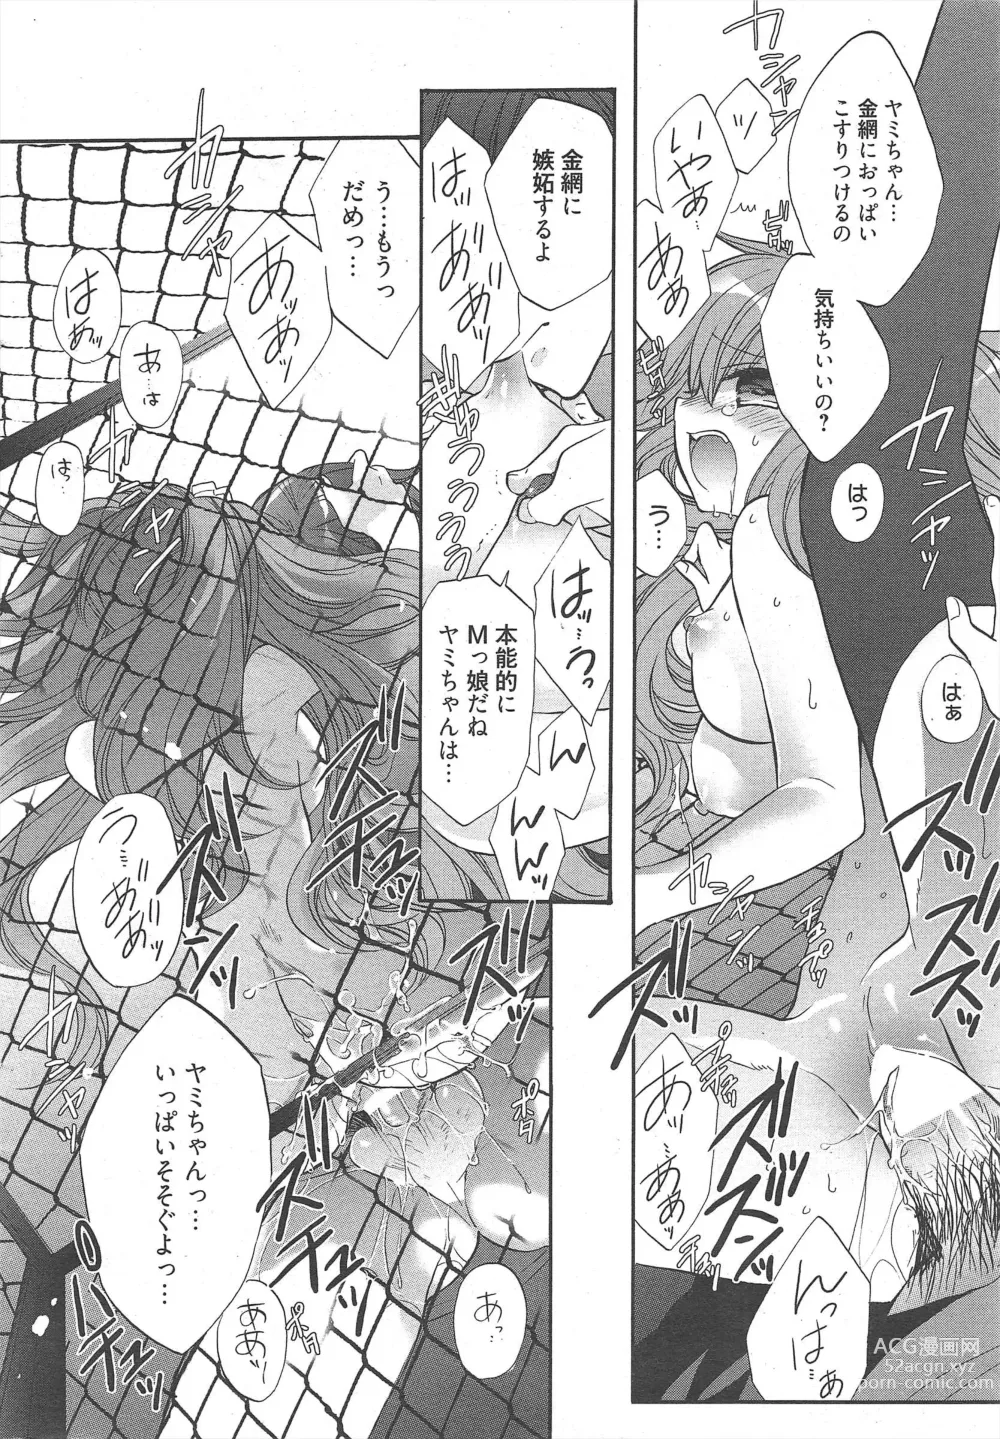 Page 18 of manga Manga Bangaichi 2011-12